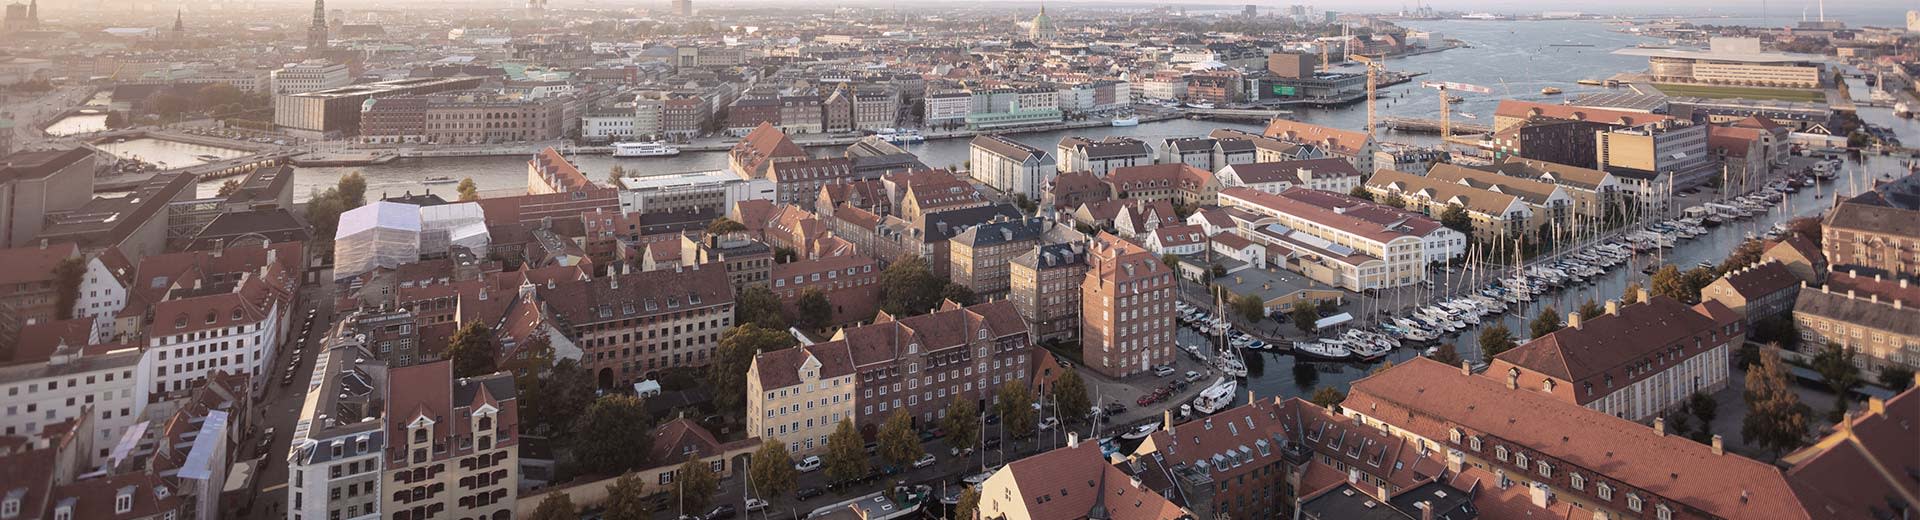 Die schönen und historischen Straßen von Kopenhagen an einem kalten und klaren Tag.